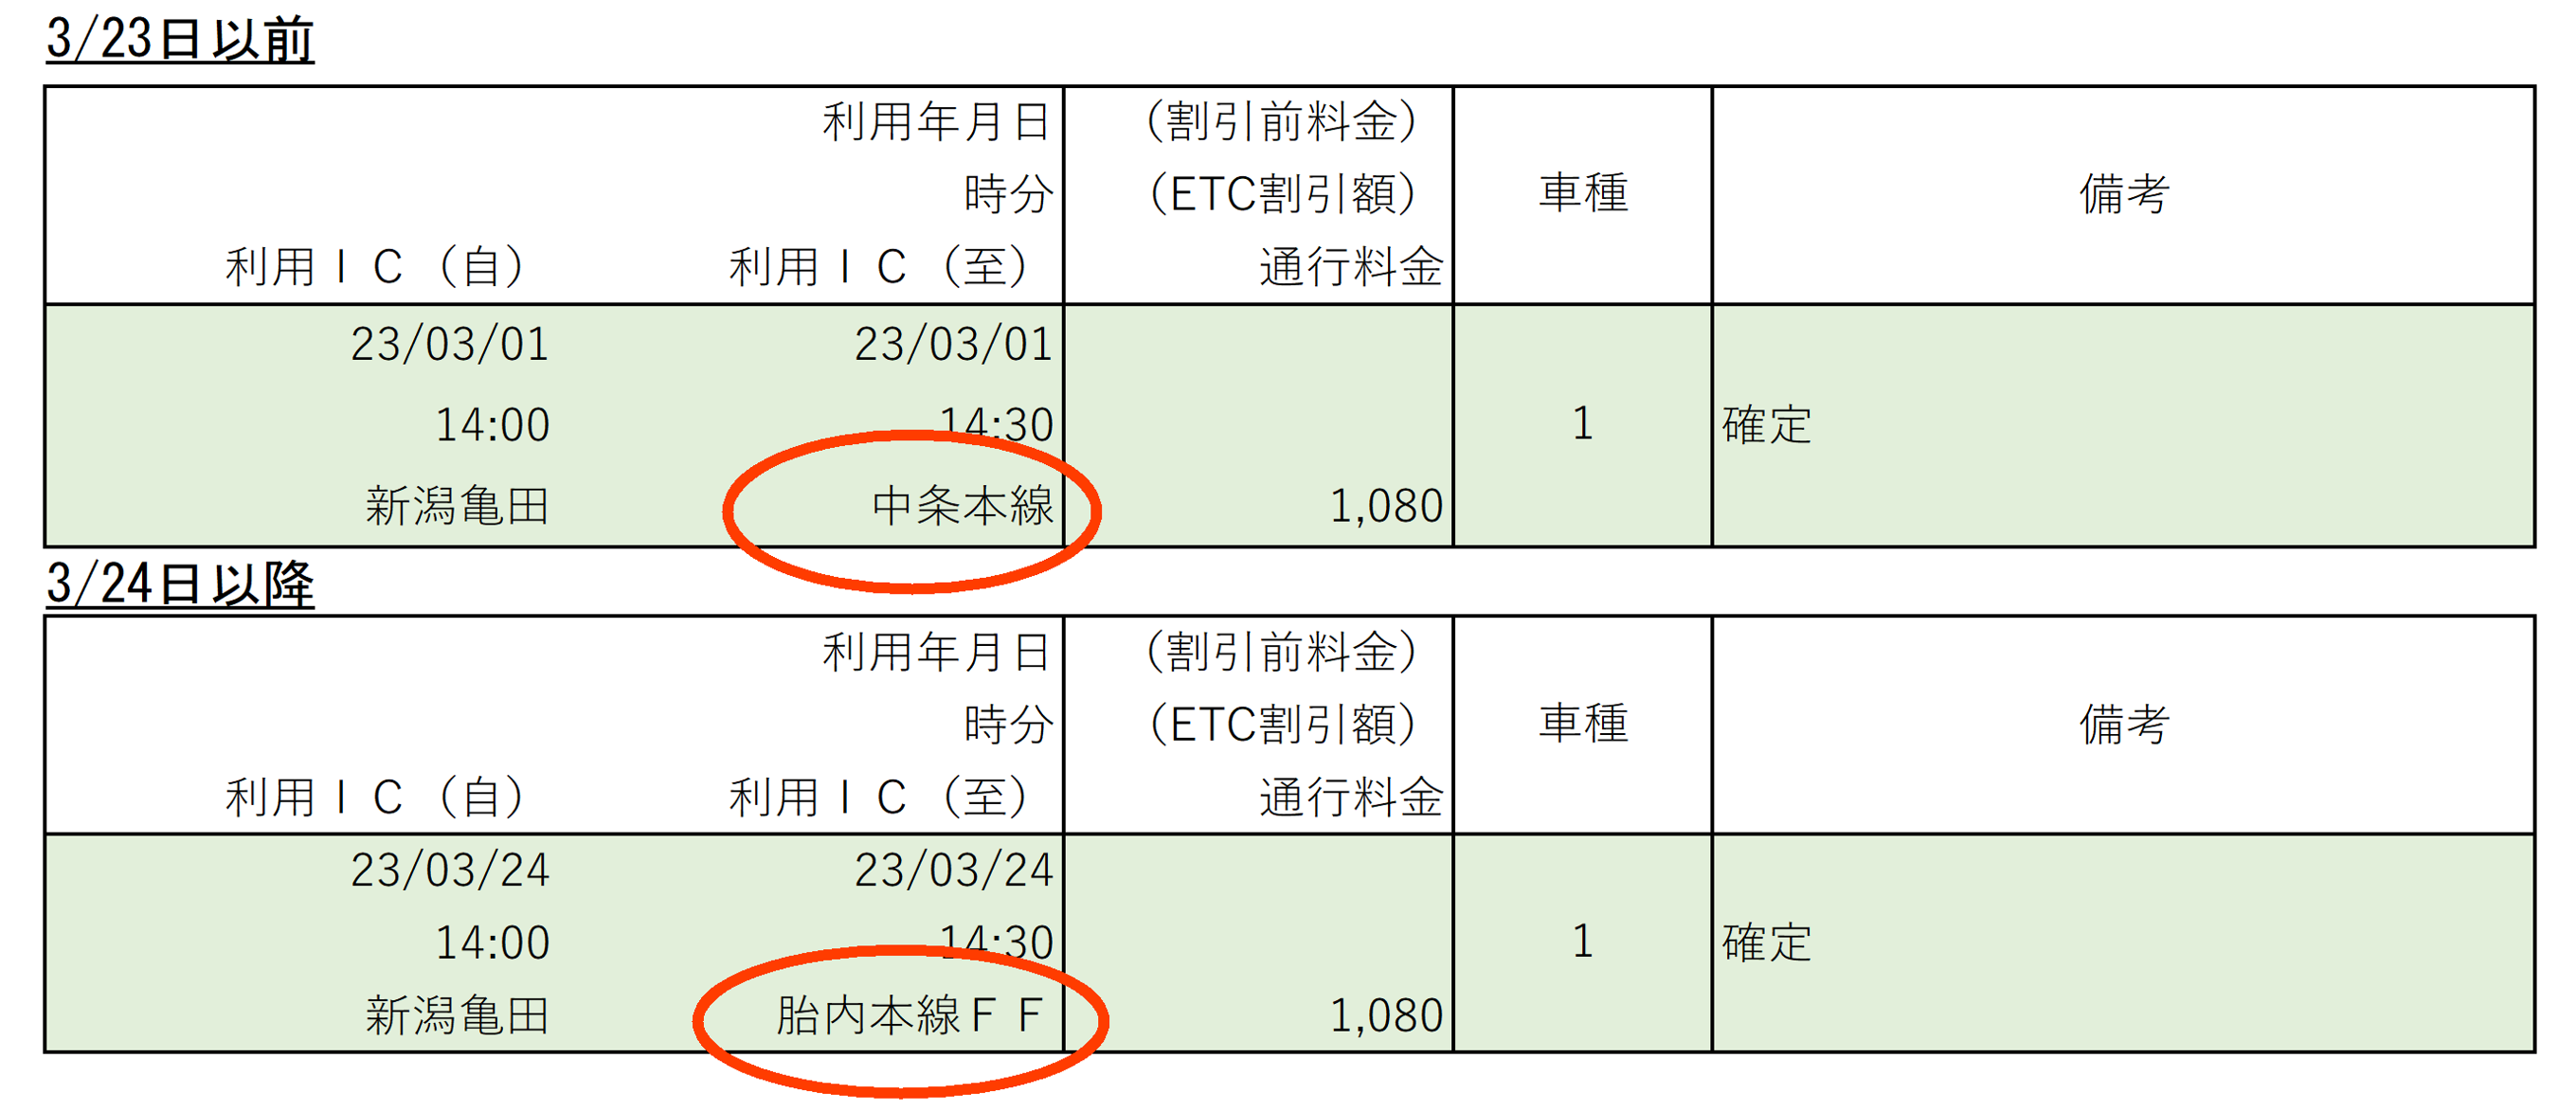 日本海東北自動車道 荒川胎内IC出口の利用明細の表示について